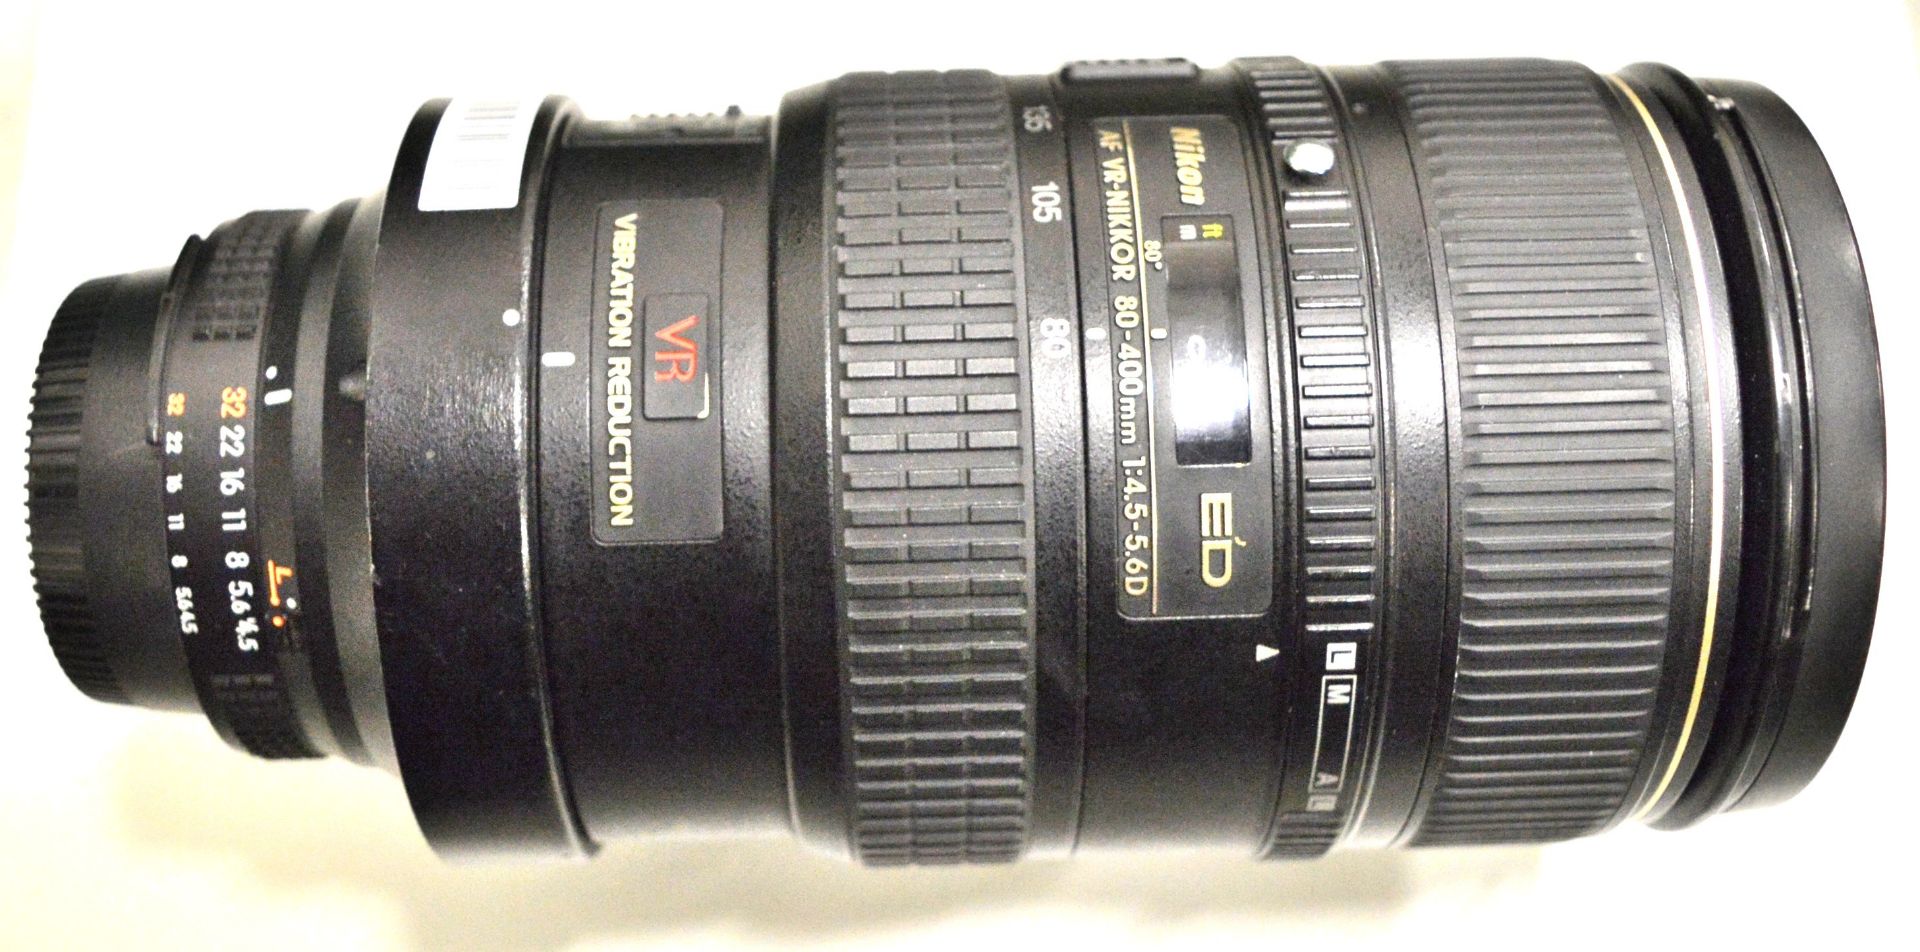 Nikon Lens AF-Nikkor 80-400mm 1:4.5-5.6D - Serial No. 239811. - Image 3 of 6